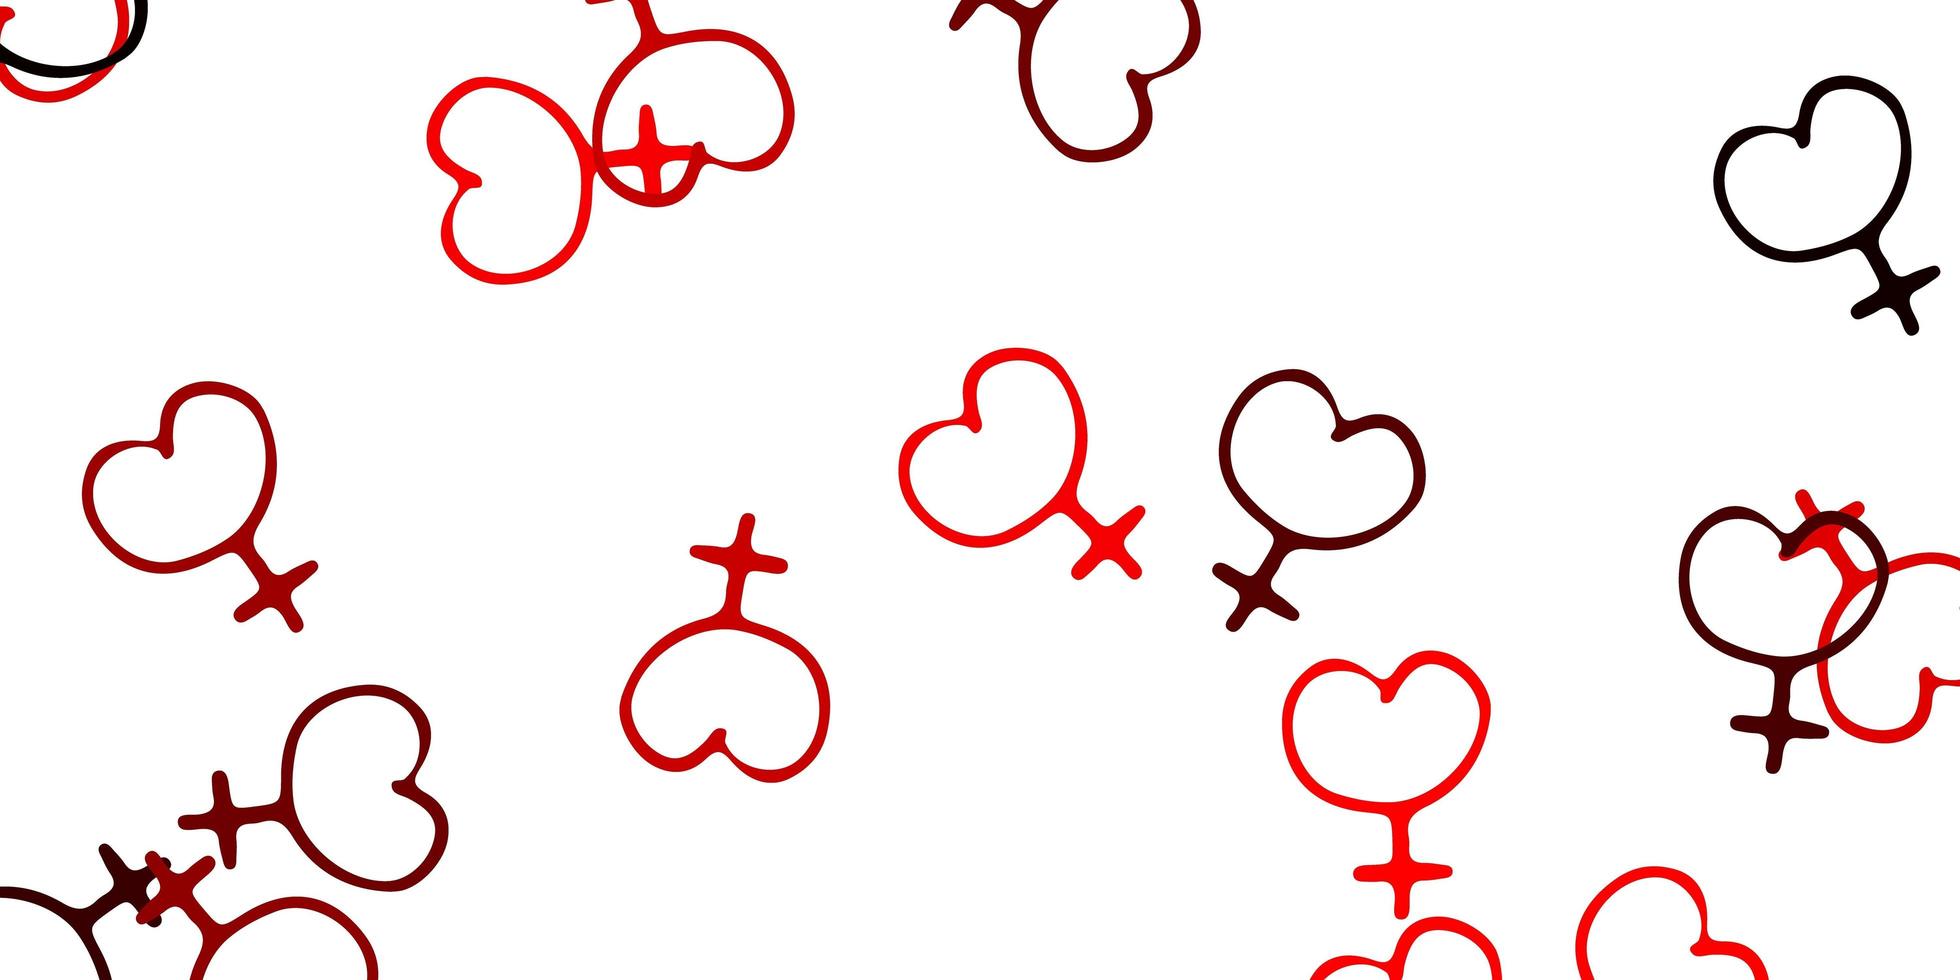 pano de fundo vector vermelho claro com símbolos de poder feminino